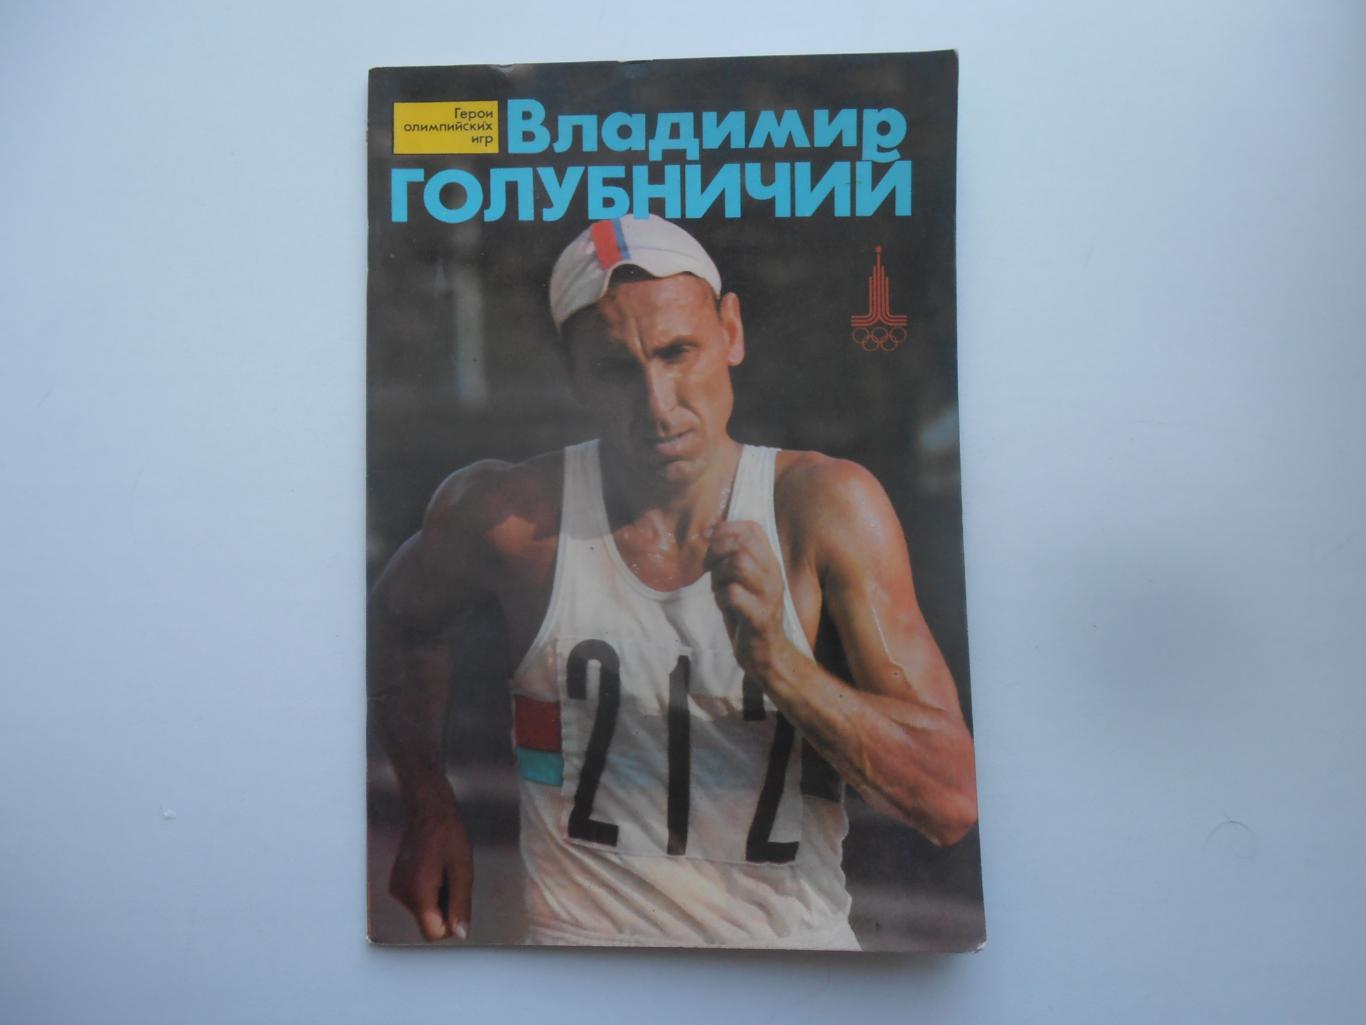 Владимир Голубничий 1978 Герои олимпийских игр